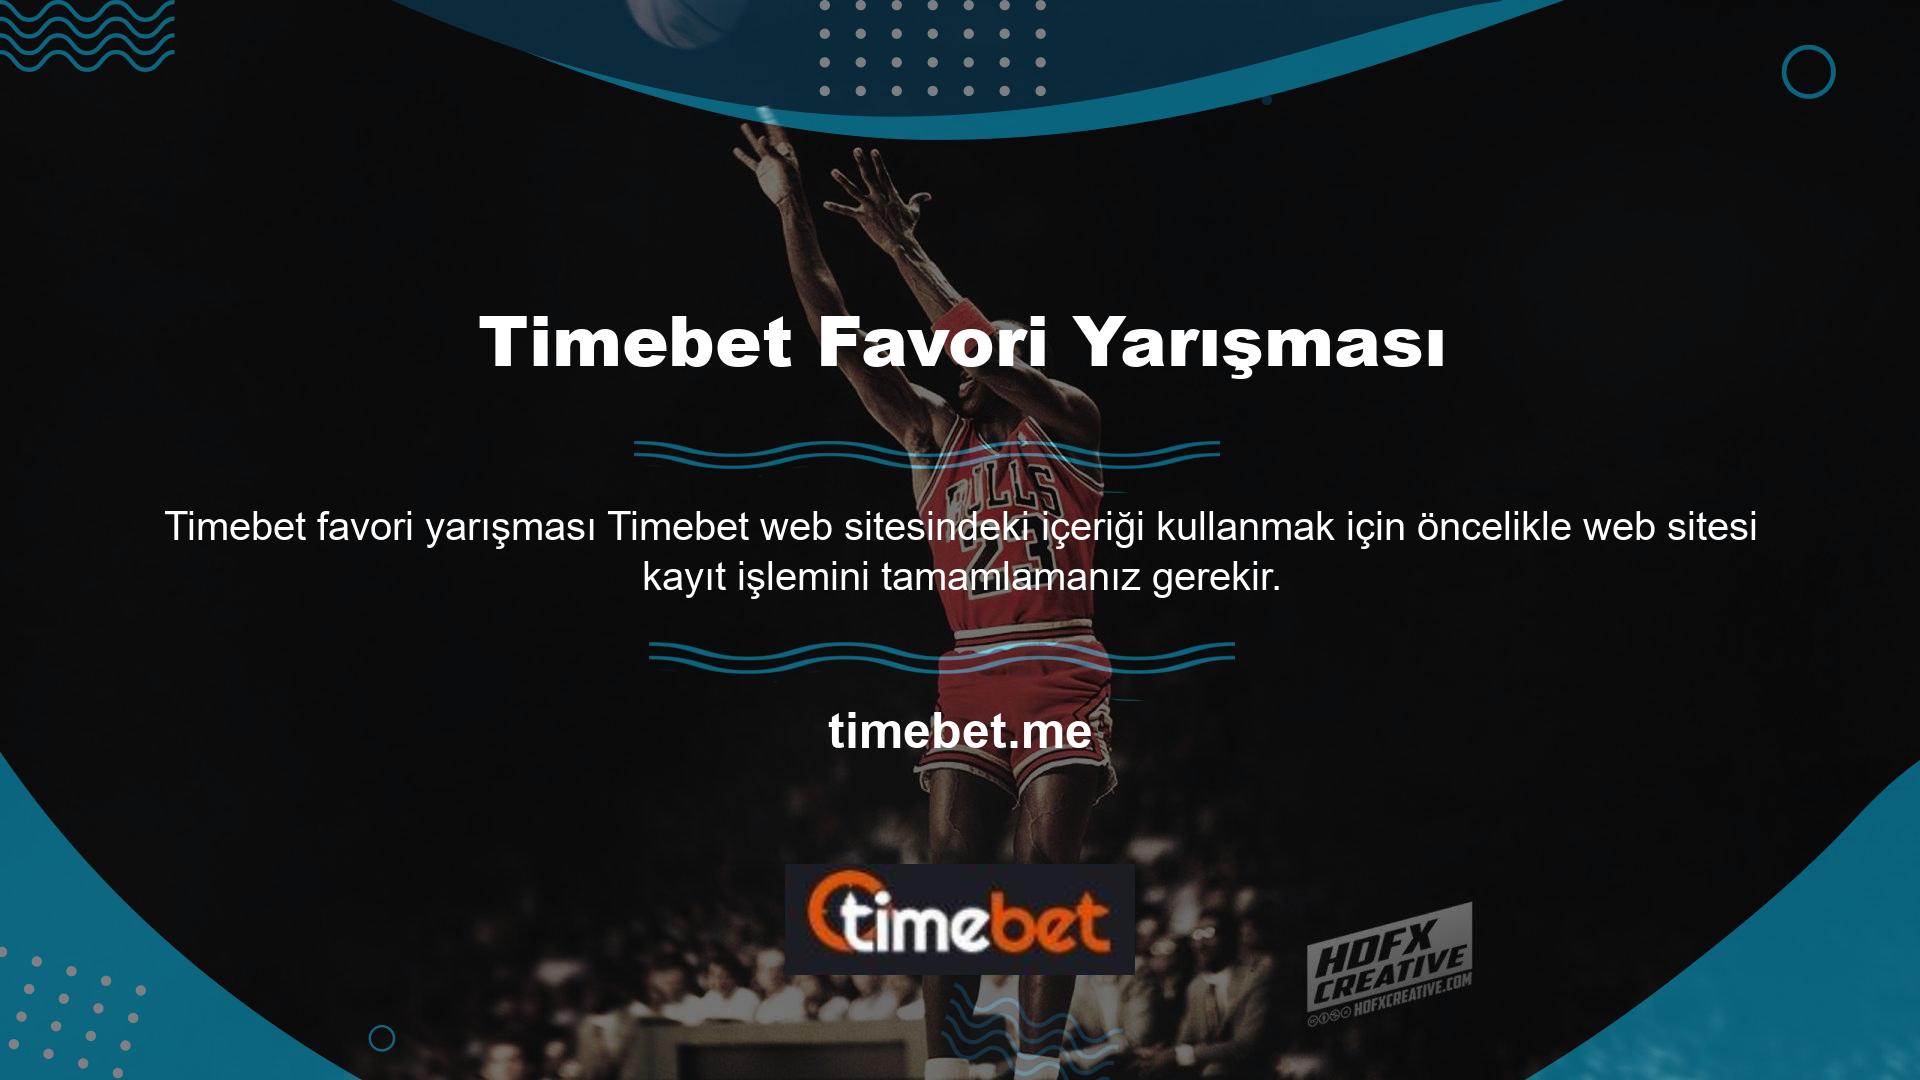 Timebet web sitesi siyah, beyaz, gri ve mavi temalarla gelir